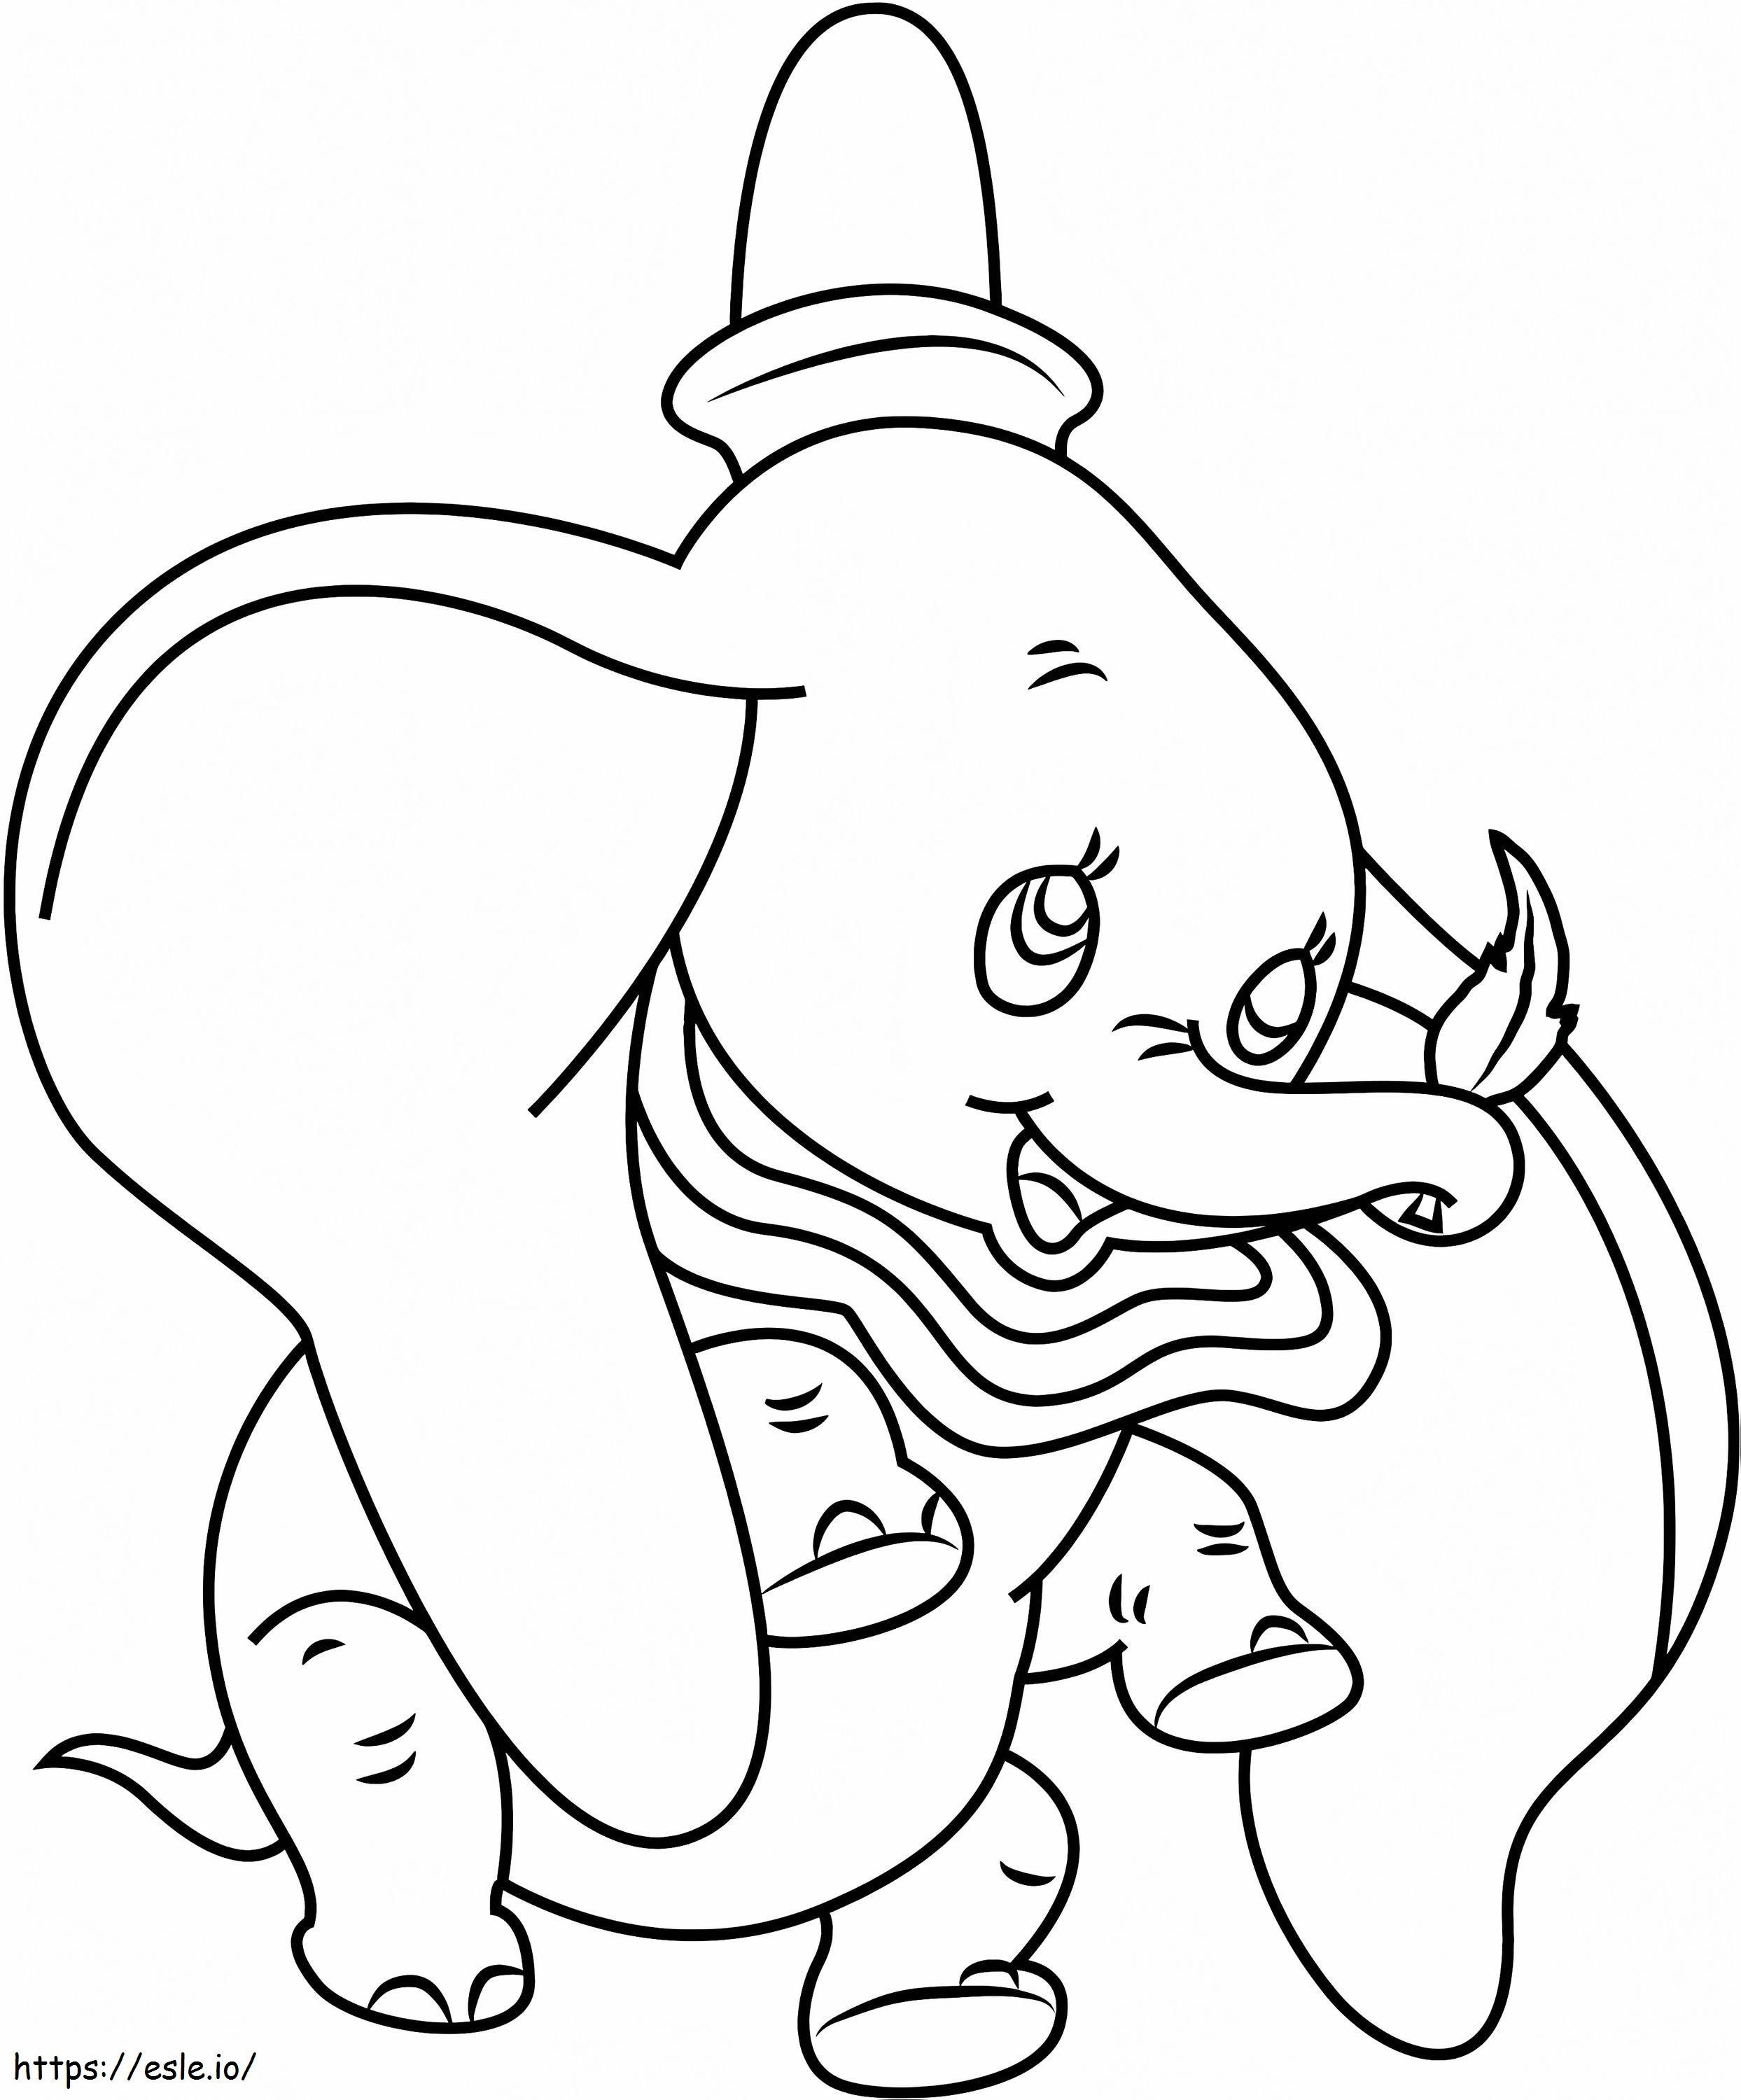 1530929502 Dumbo Holding Leaf A4 ausmalbilder